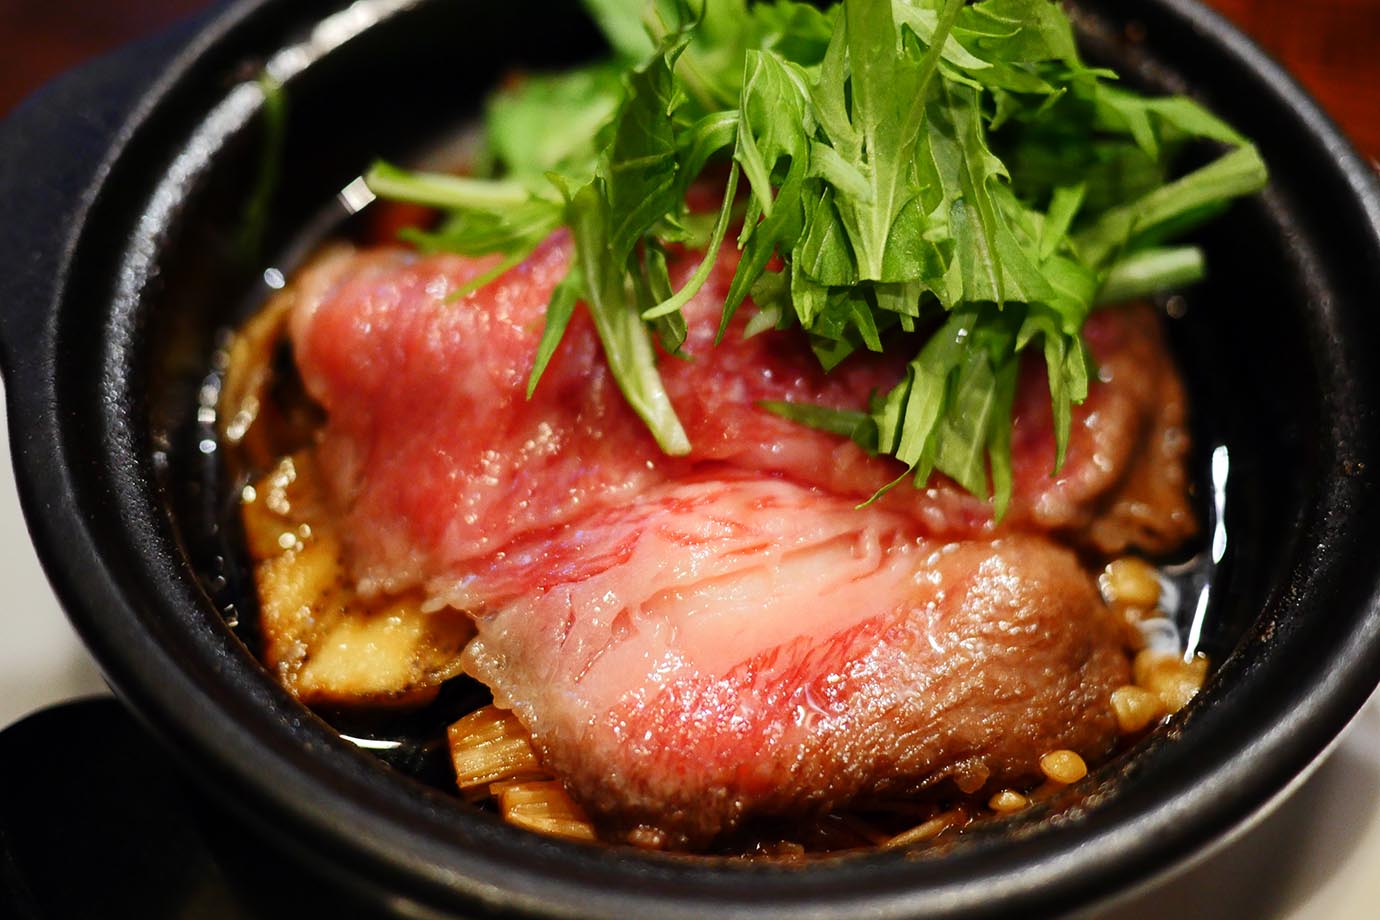 【美食グルメ】香港で絶対に失敗しない料理は「鶏肉と豚肉の料理」と判明 / 確かに失敗しなかった(笑)